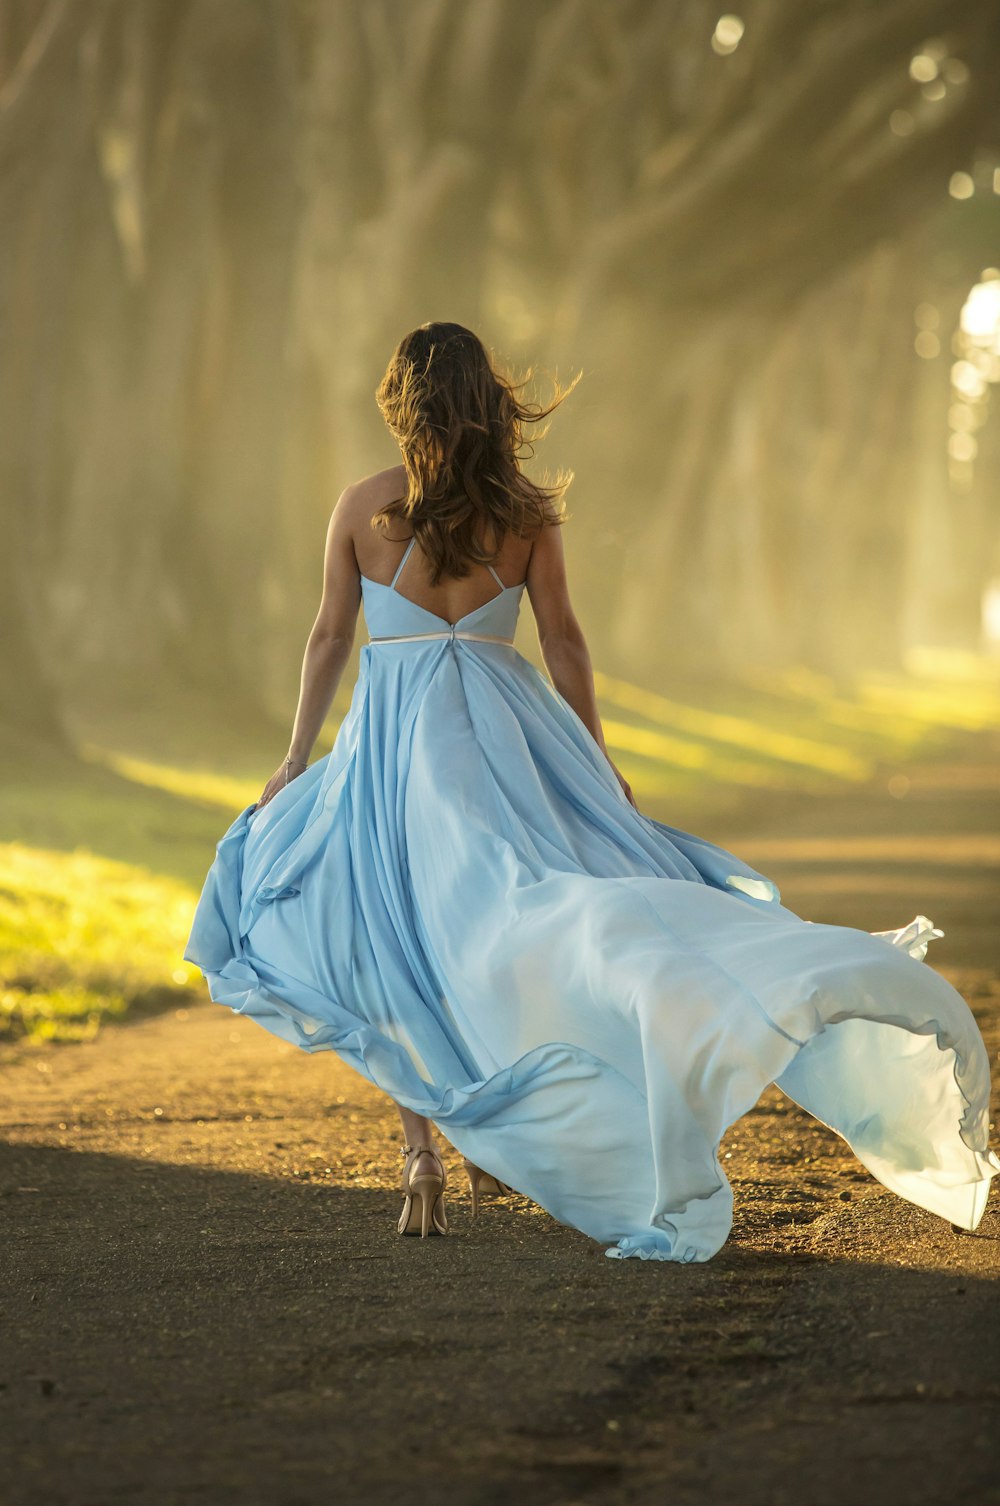 Mujer en vestido azul caminando por el camino durante el día